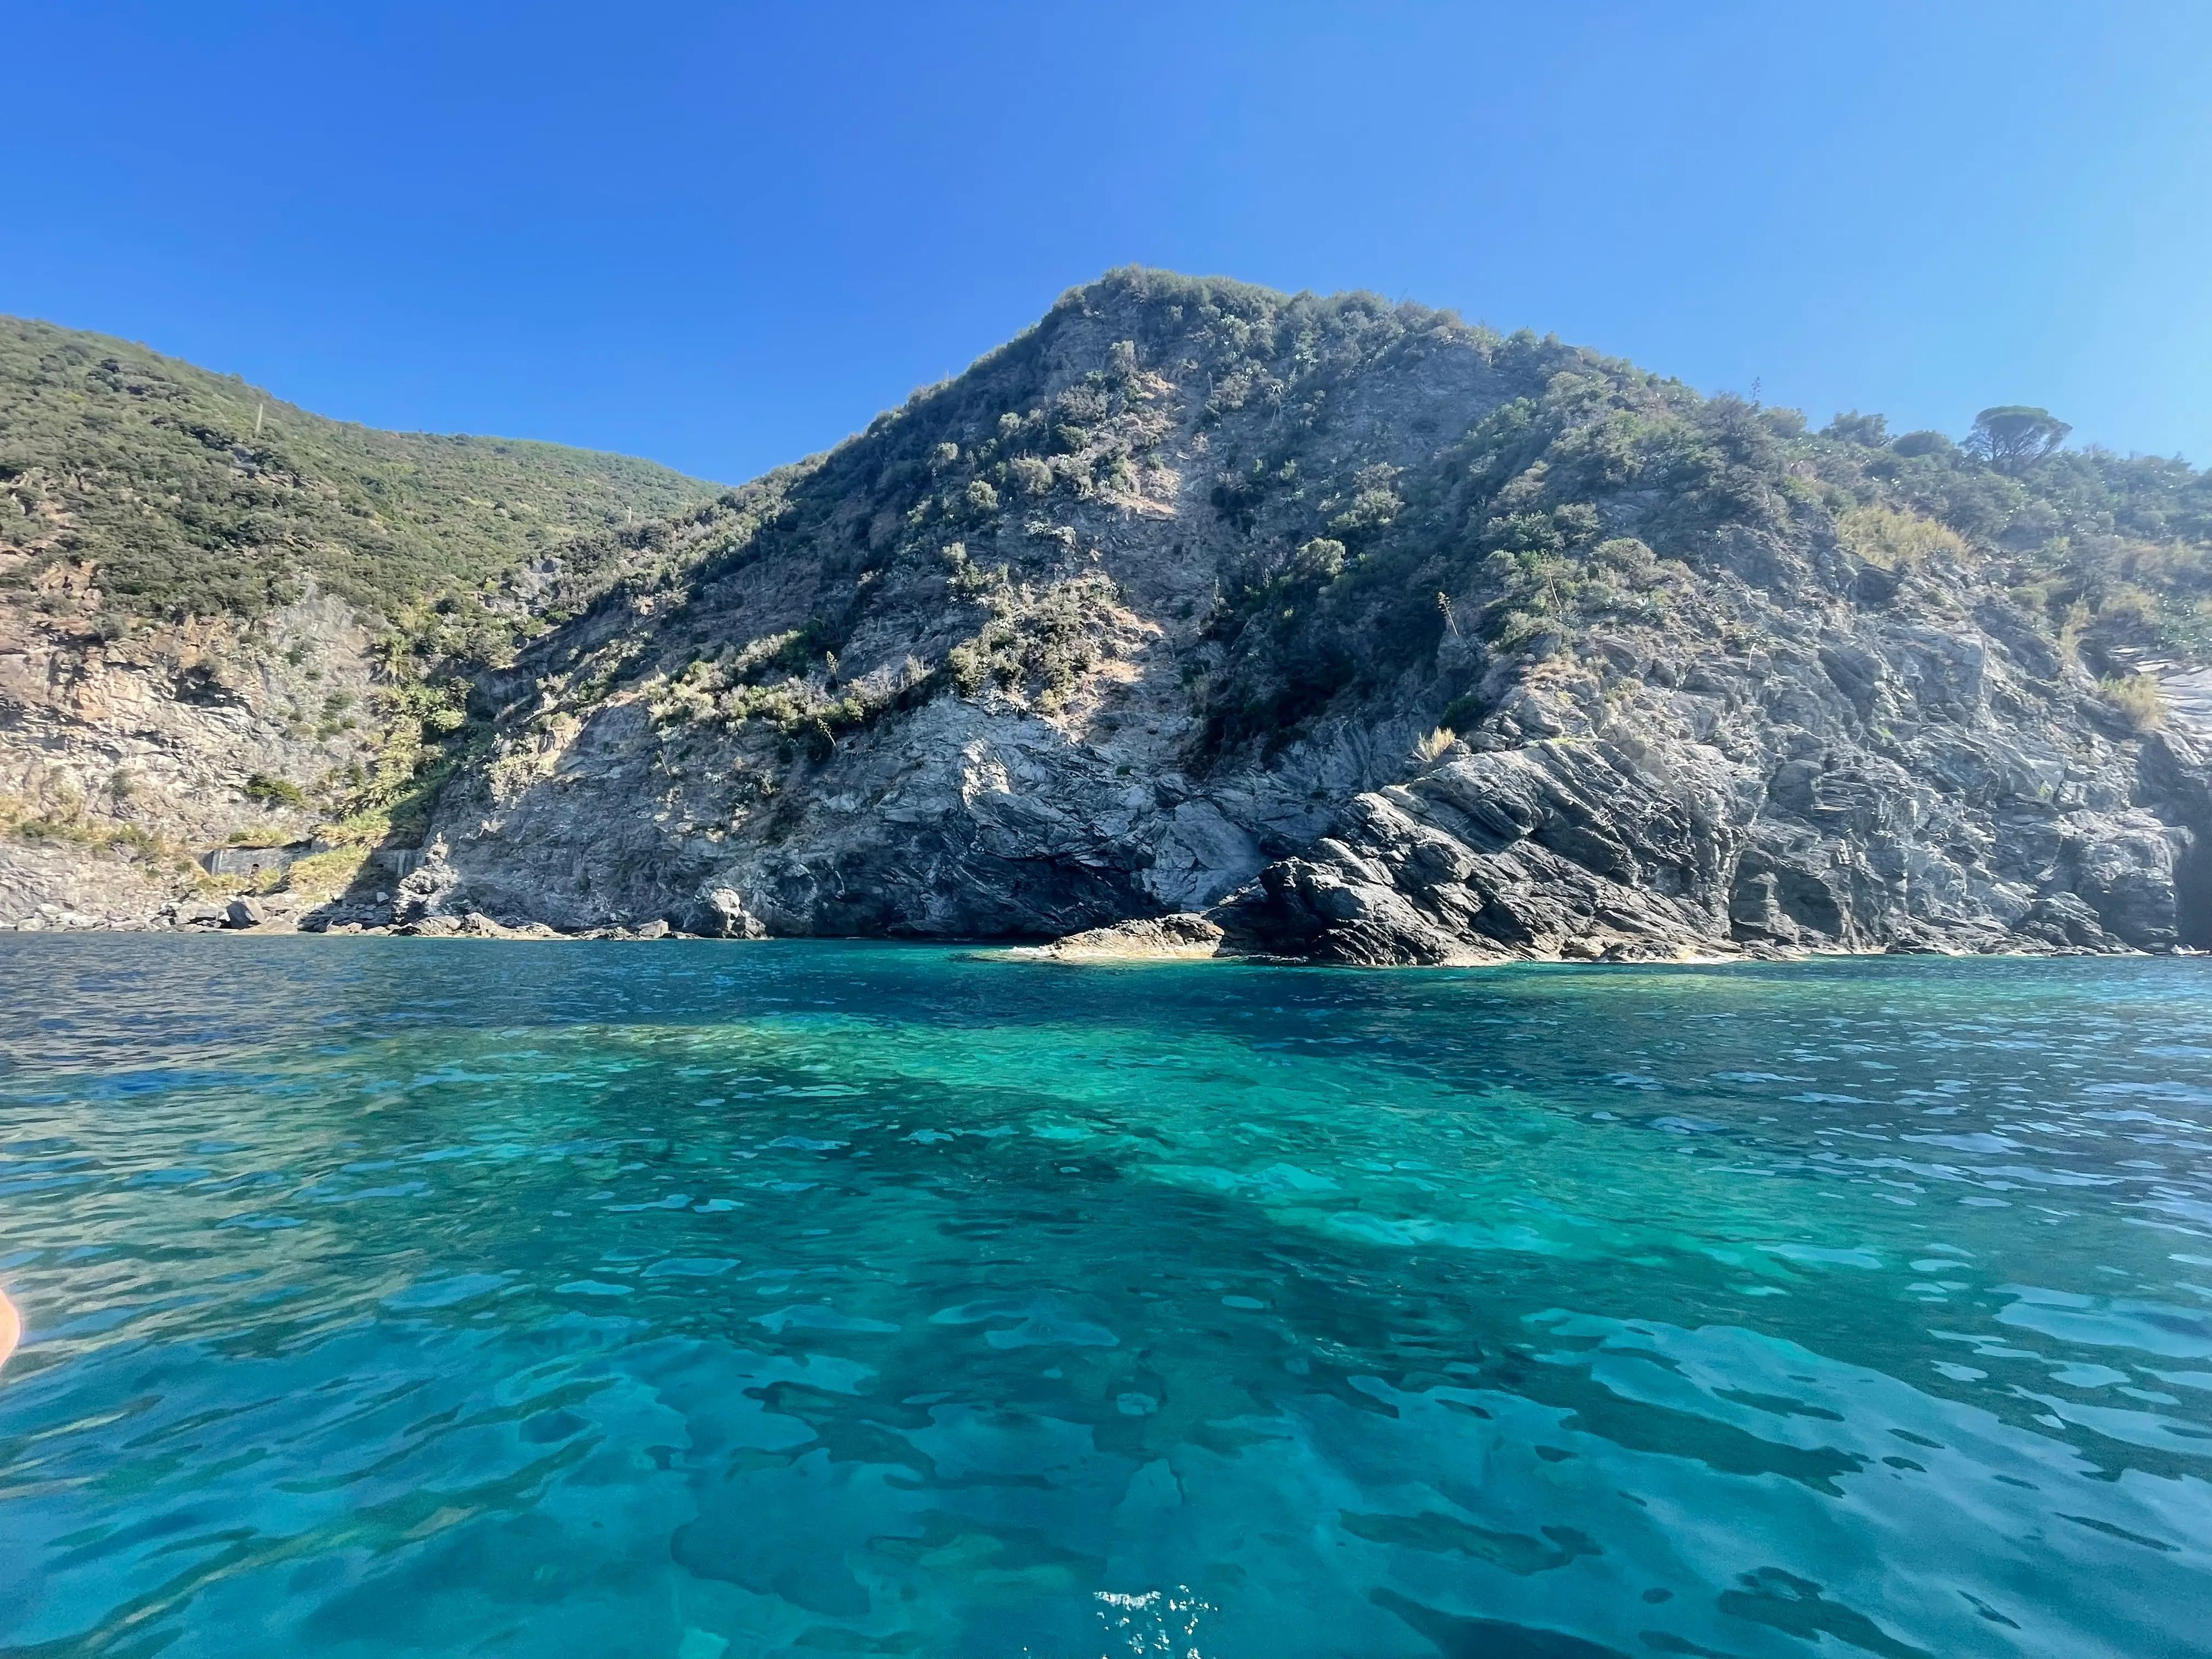 Nos bañamos en sus aguas cristalinas durante nuestra visita a Cinque Terre.